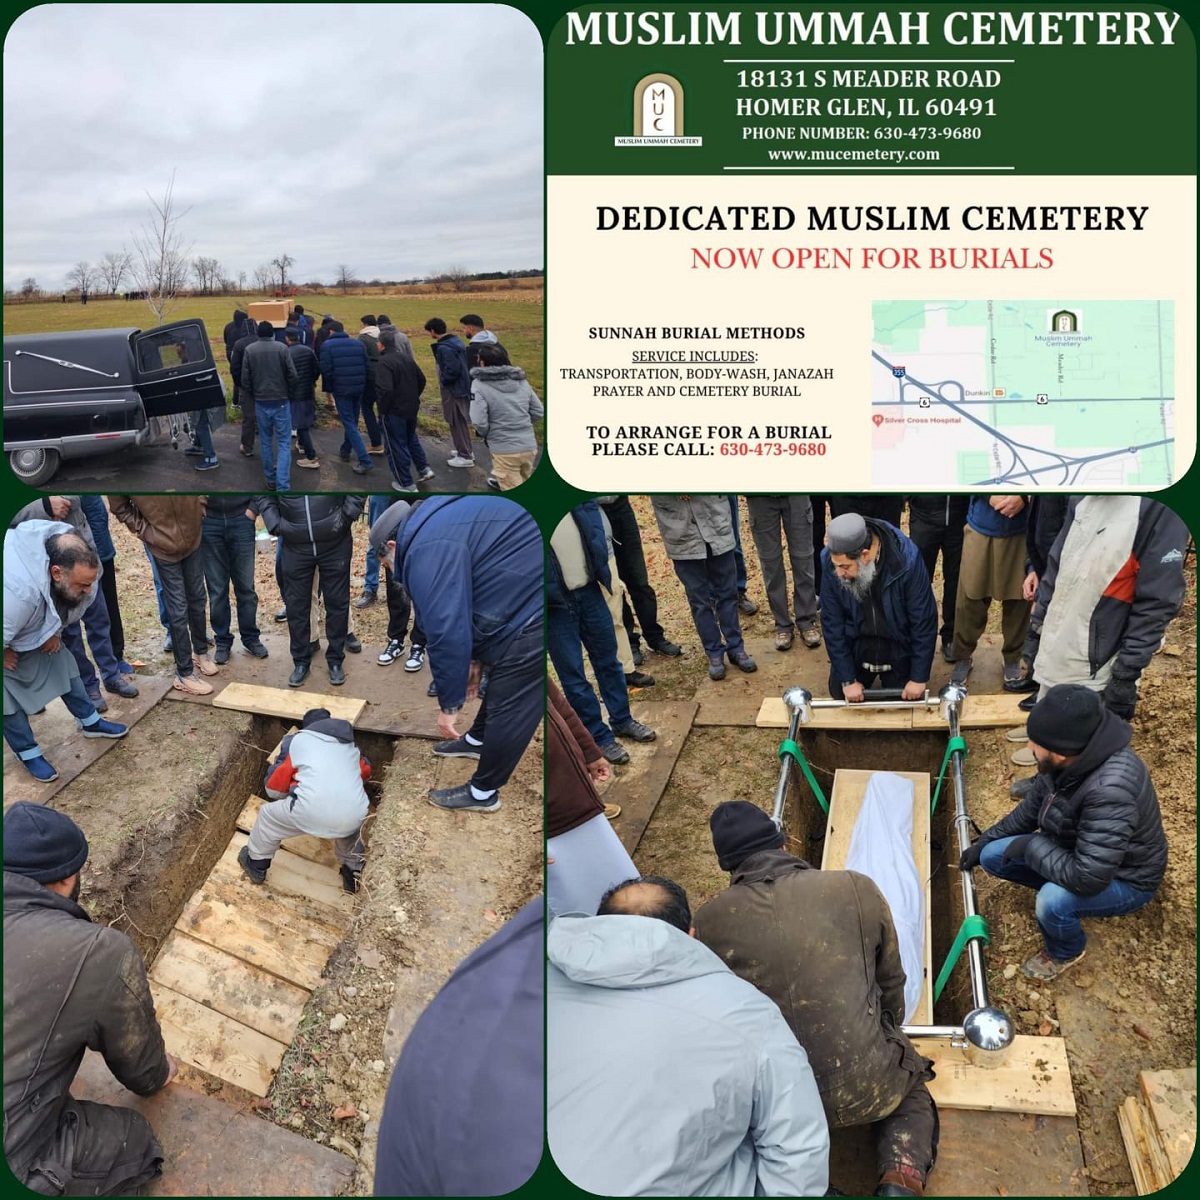 تم تشييع أول جنازة لأول مقبرة إسلامية مستقلة بولاية إلينوي الأمريكية من مسجد فيلا بارك في شيكاغو